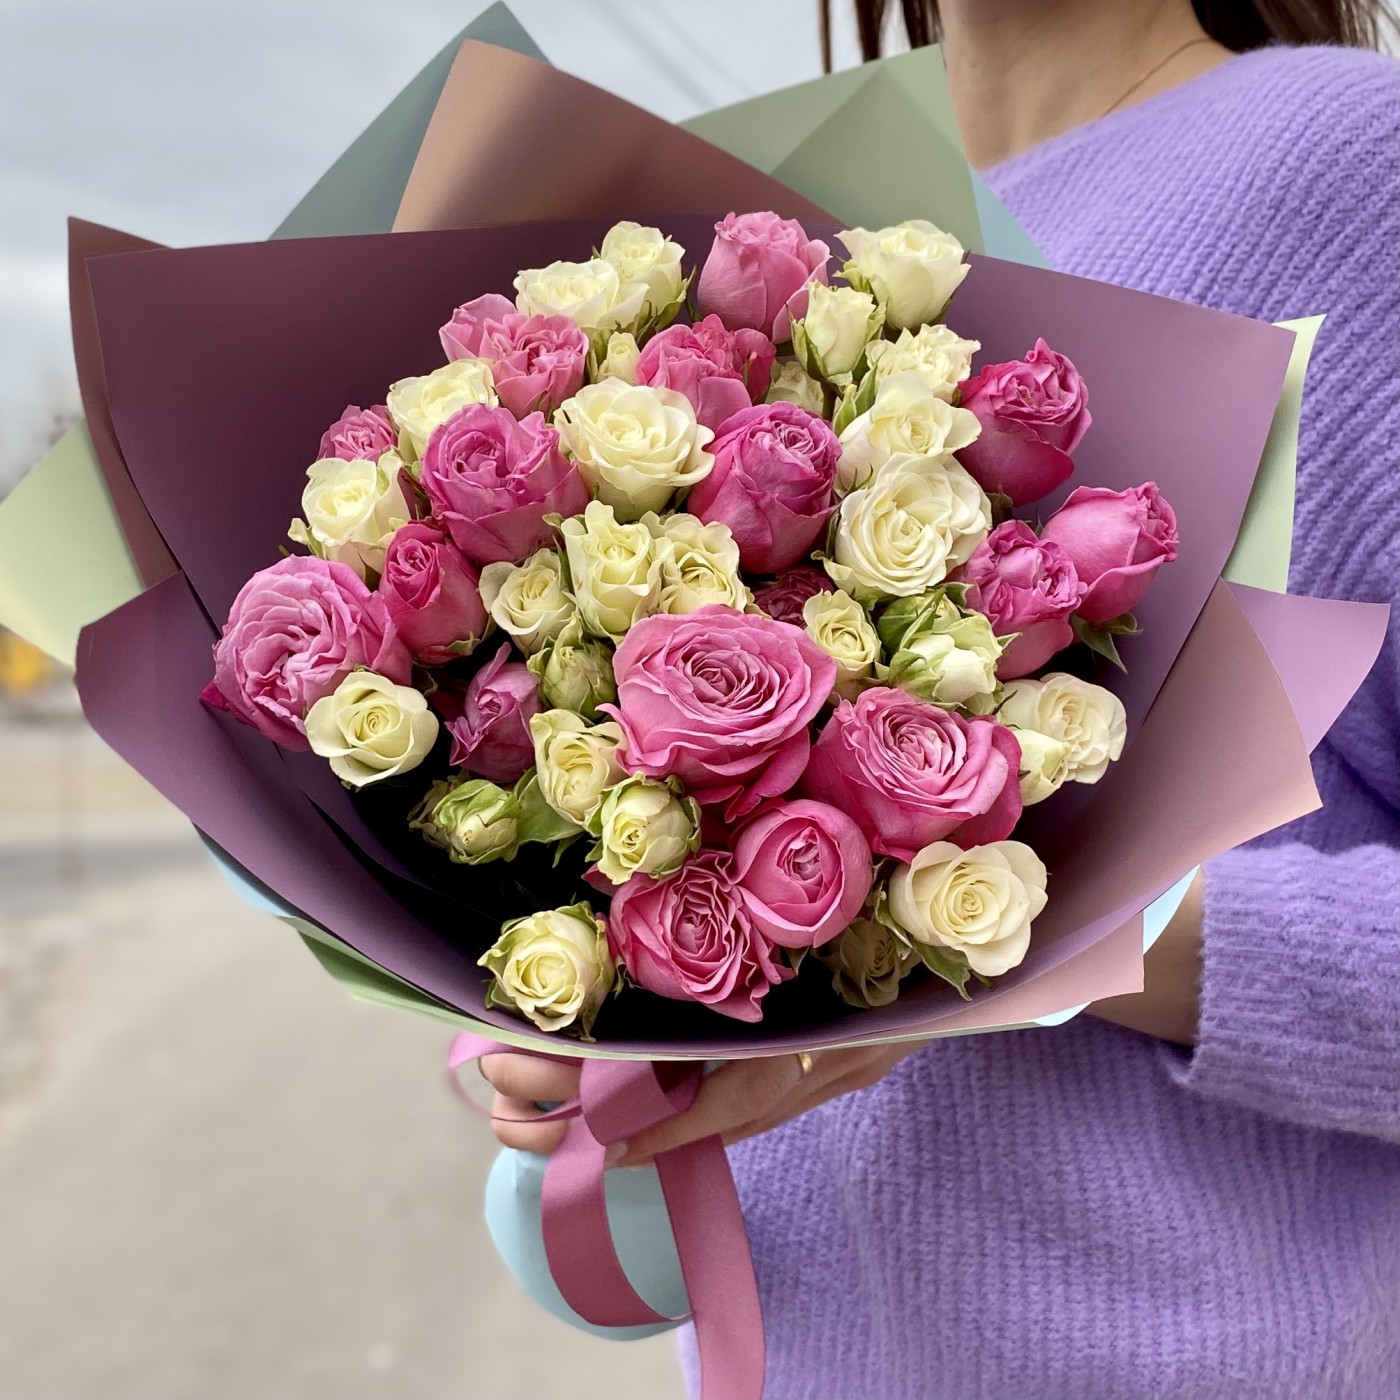 Цветы с доставкой по москве до 1000 рублей мышка в коробке